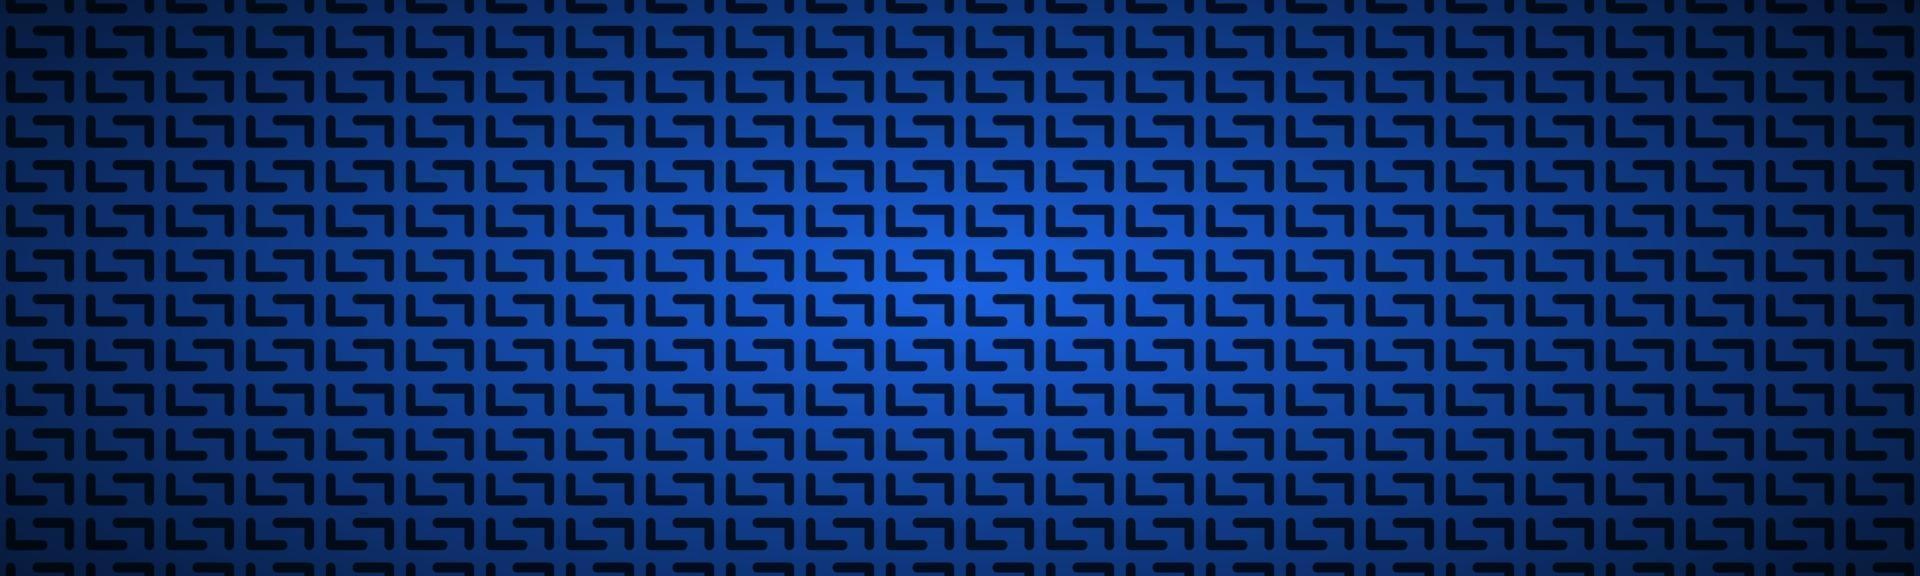 Encabezado perforado geométrico azul abstracto azul oscuro metálico banner de acero inoxidable ilustración vectorial vector